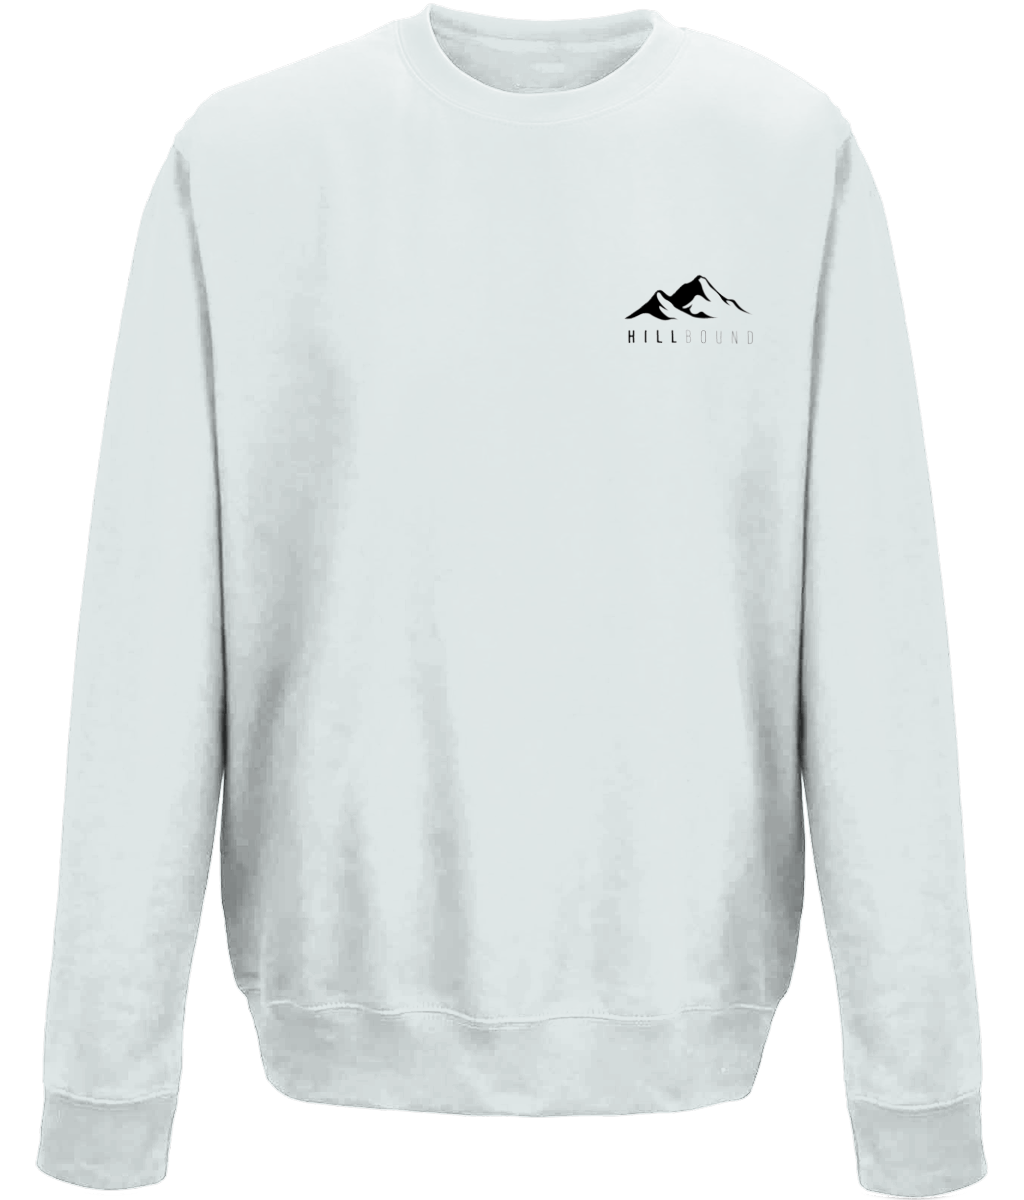 Hillbound Cotton Sweatshirt